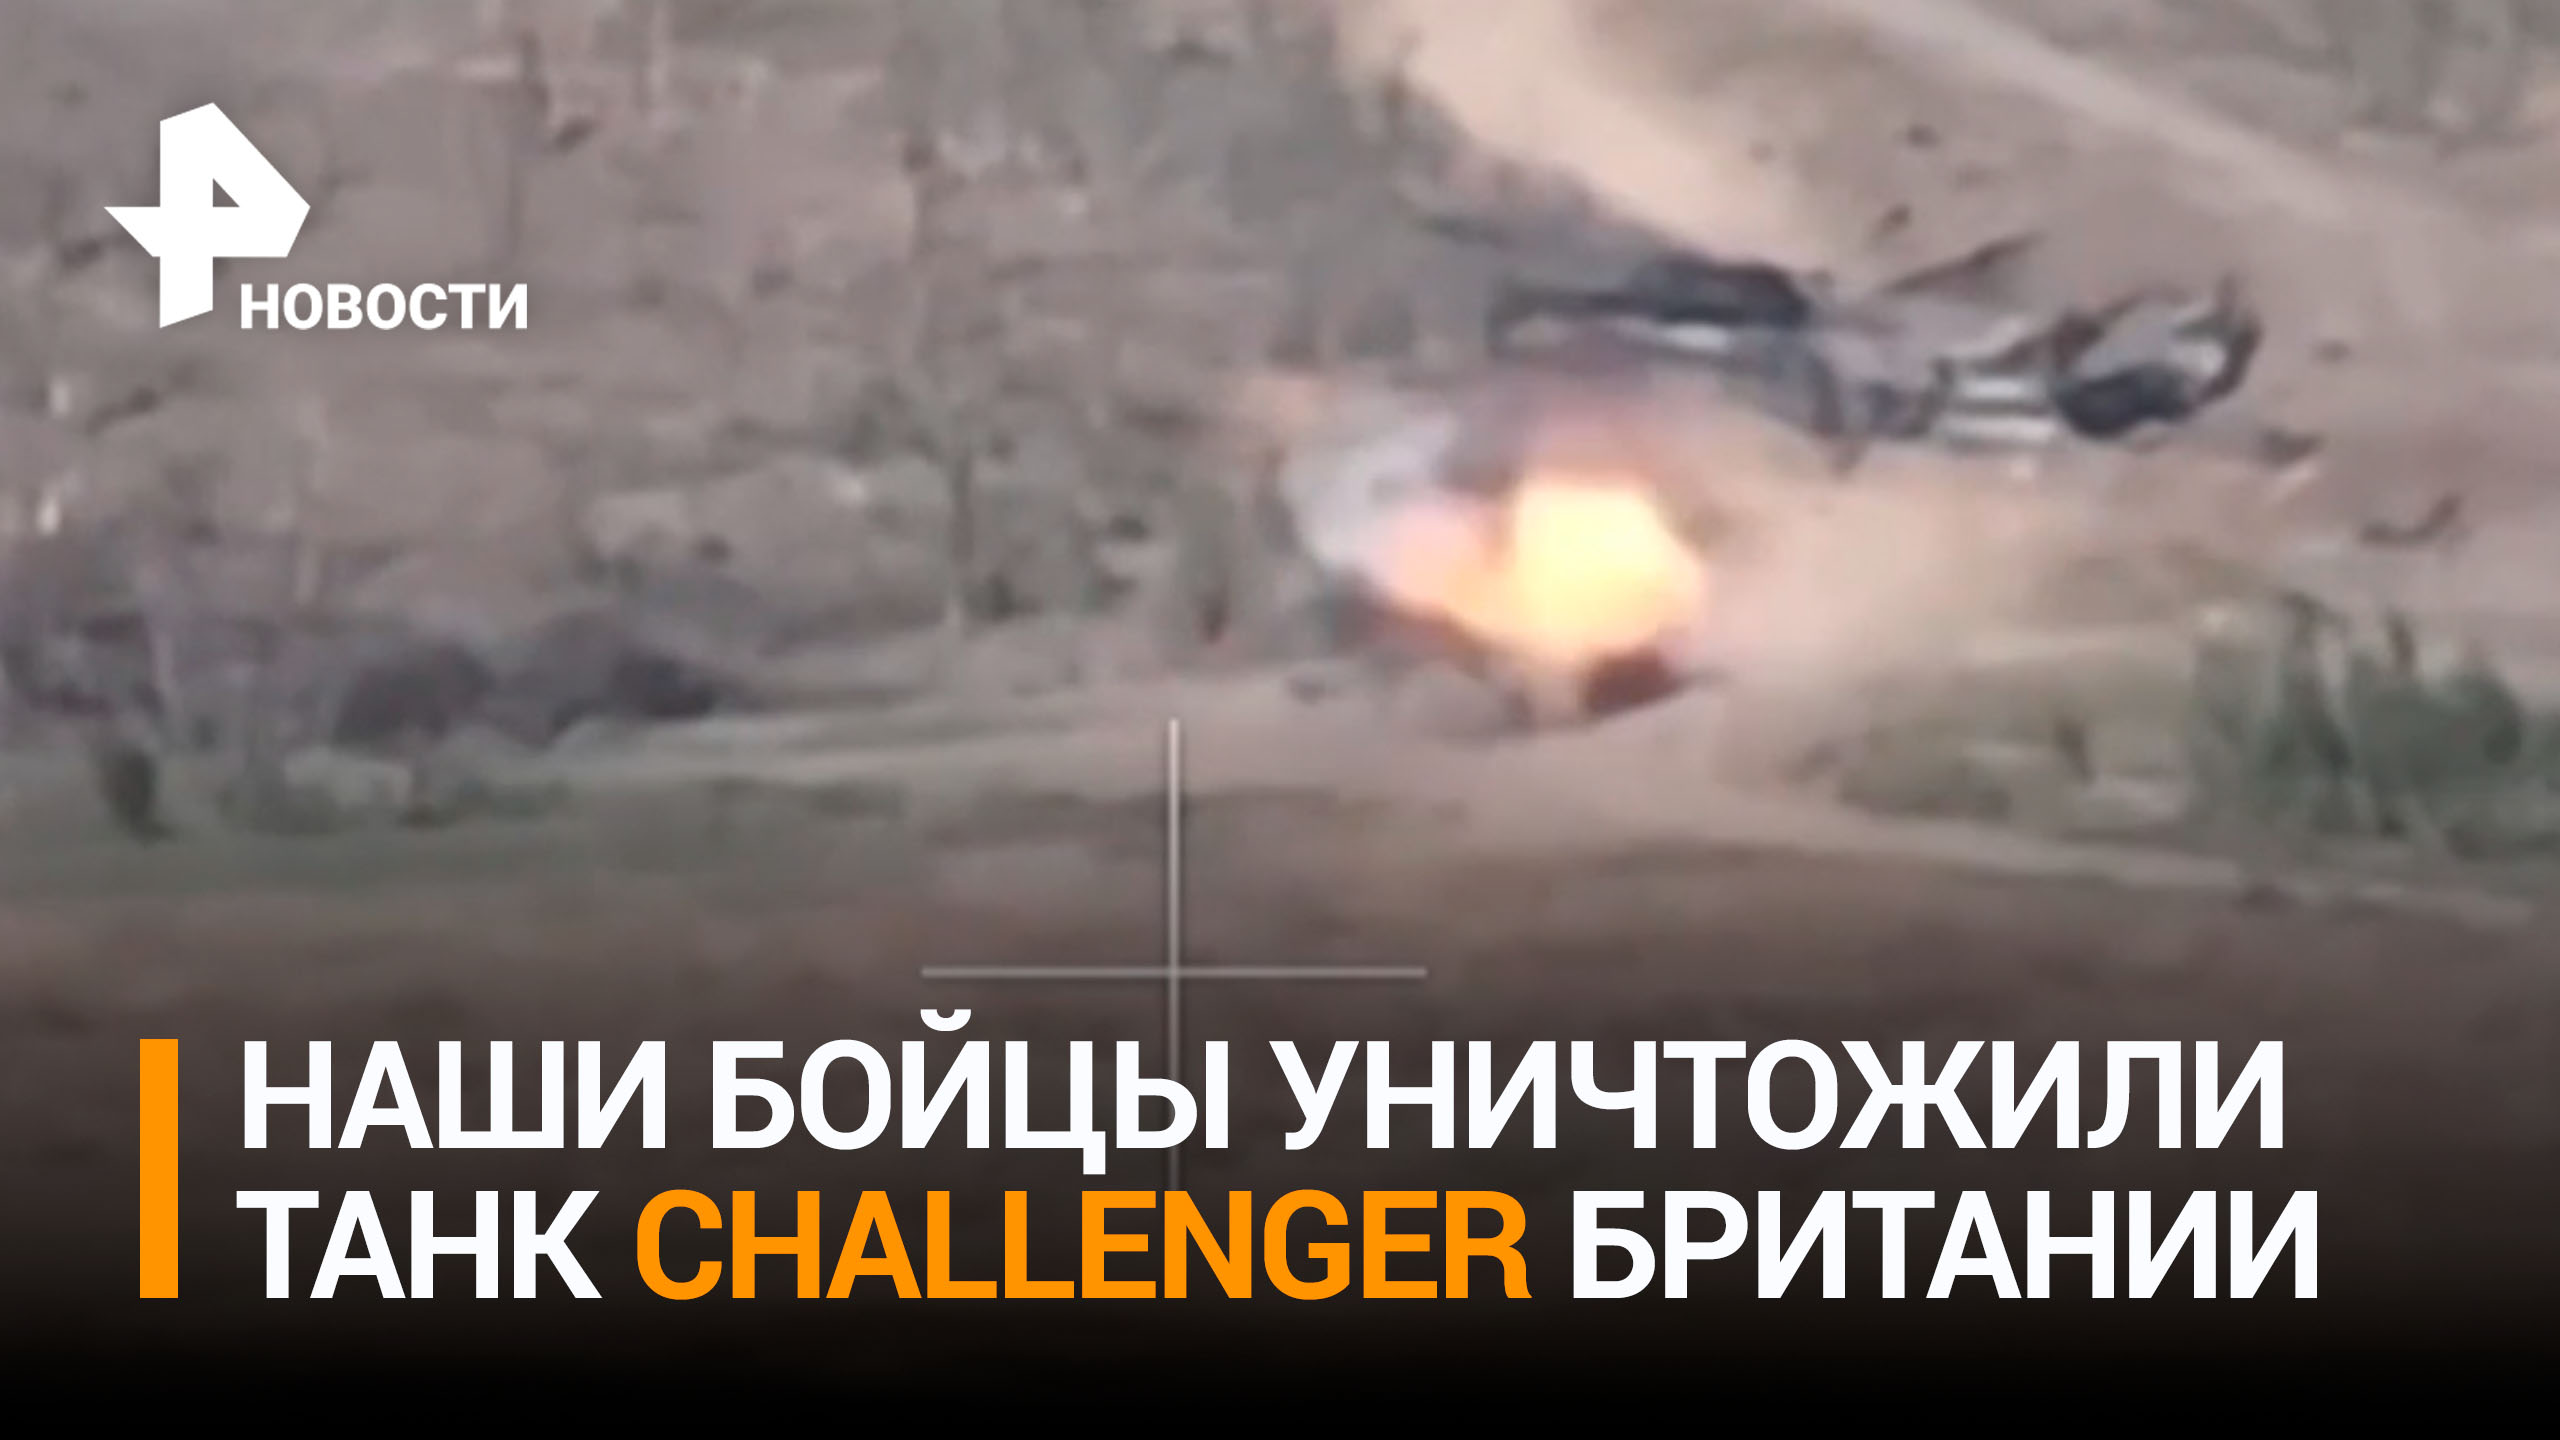 Российские военные уничтожили британский танк Challenger / РЕН Новости